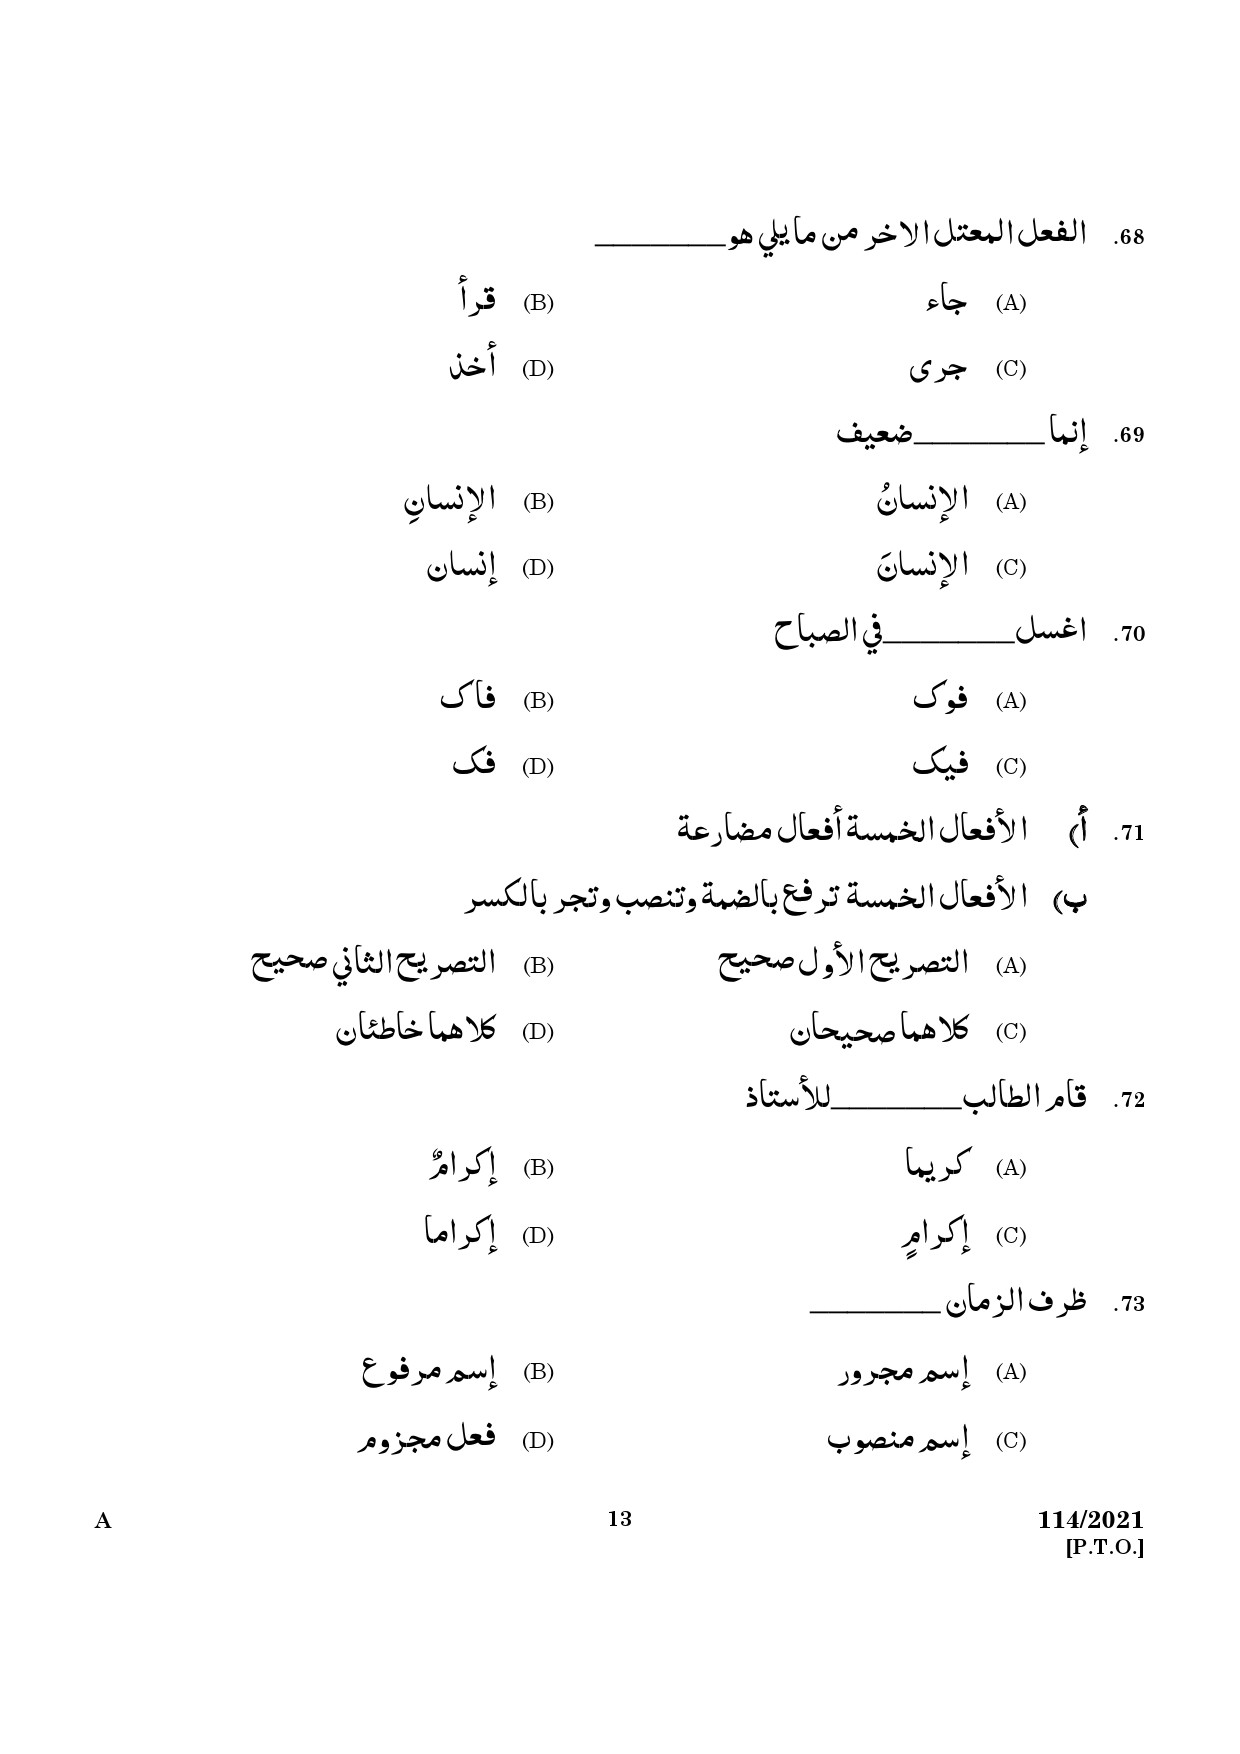 KPSC Full Time Junior Language Teacher Arabic Exam 2021 Code 1142021 11